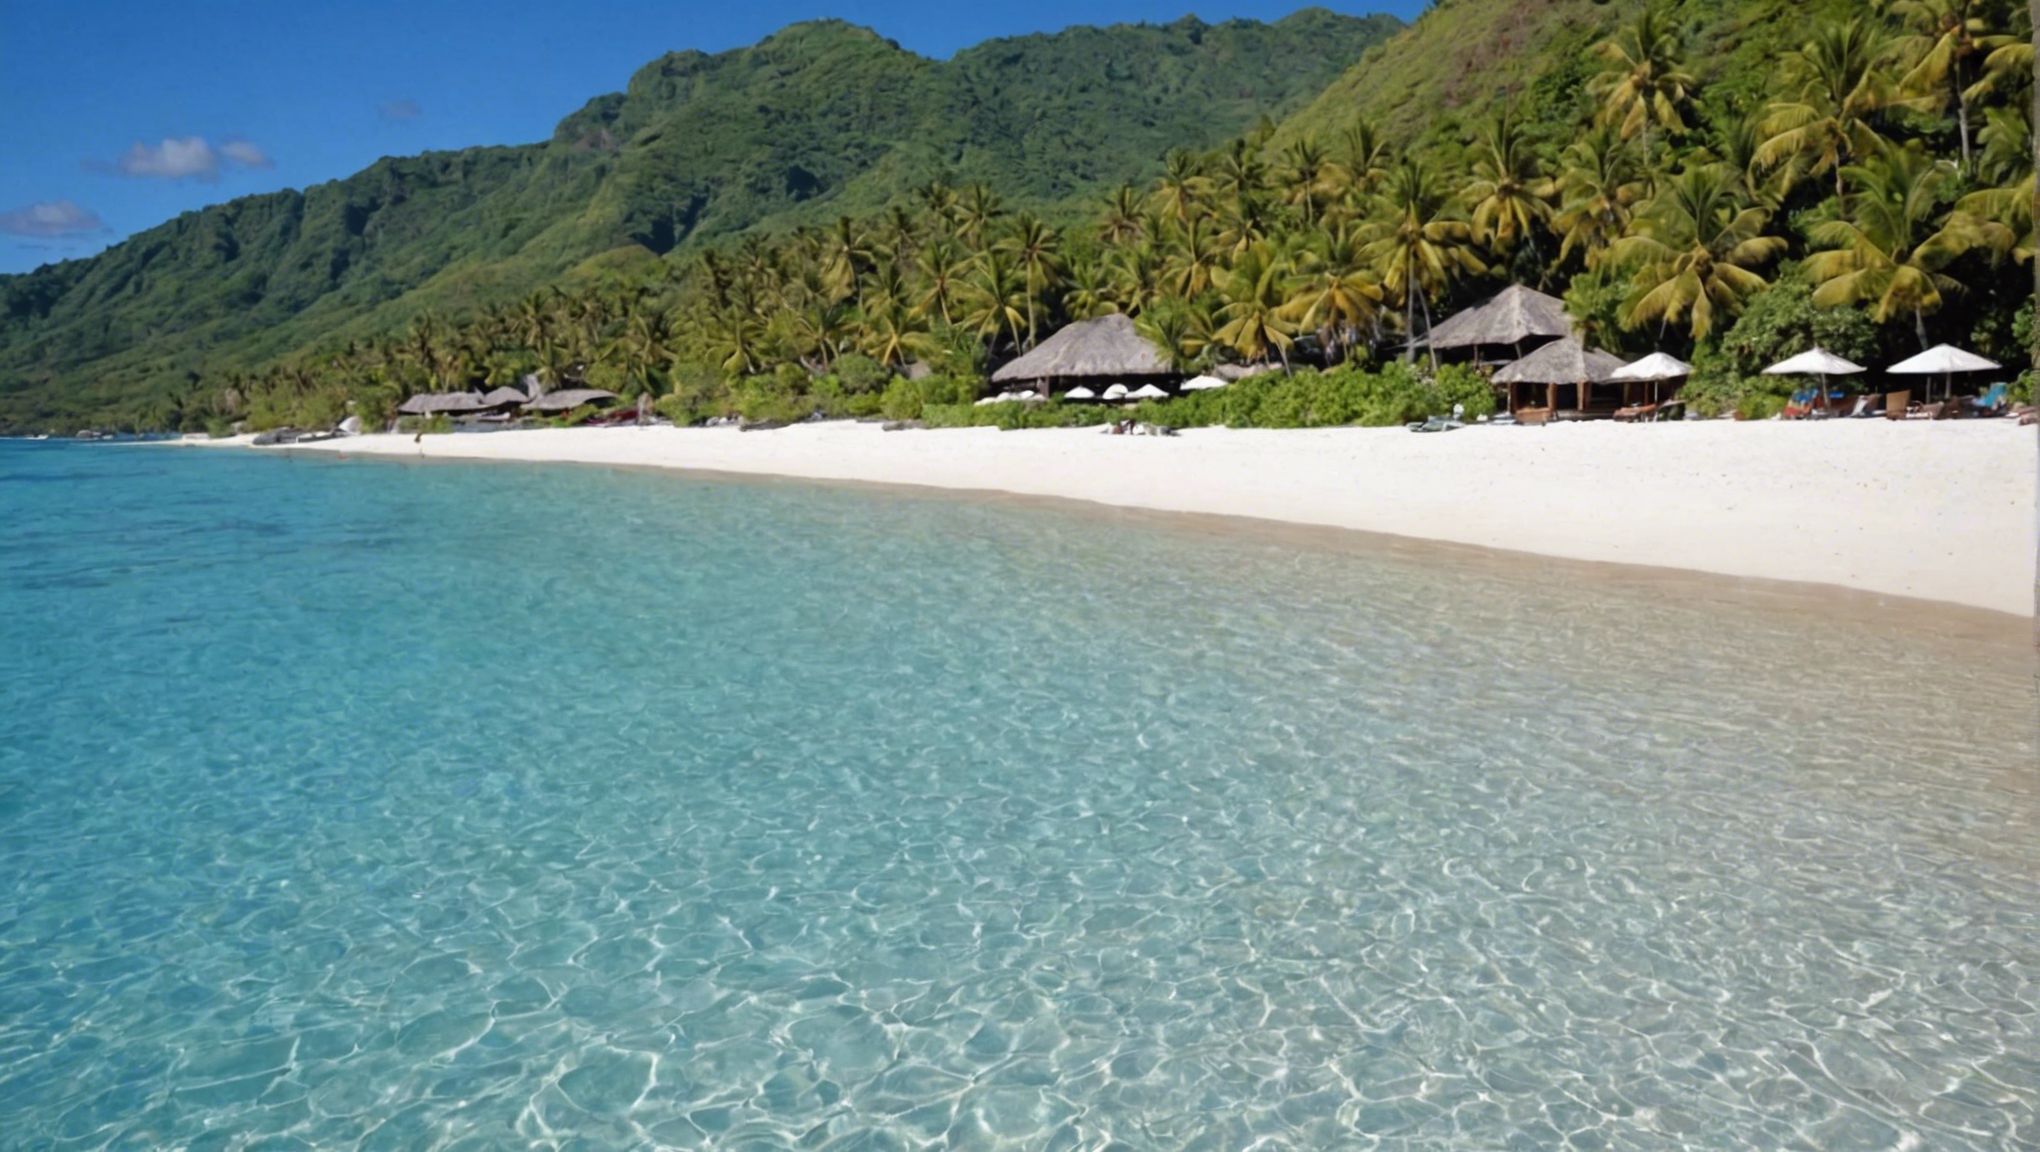 découvrez les plages de sable blanc parfaites pour la détente à tahiti. trouvez votre havre de paix pour des moments de farniente inoubliables.